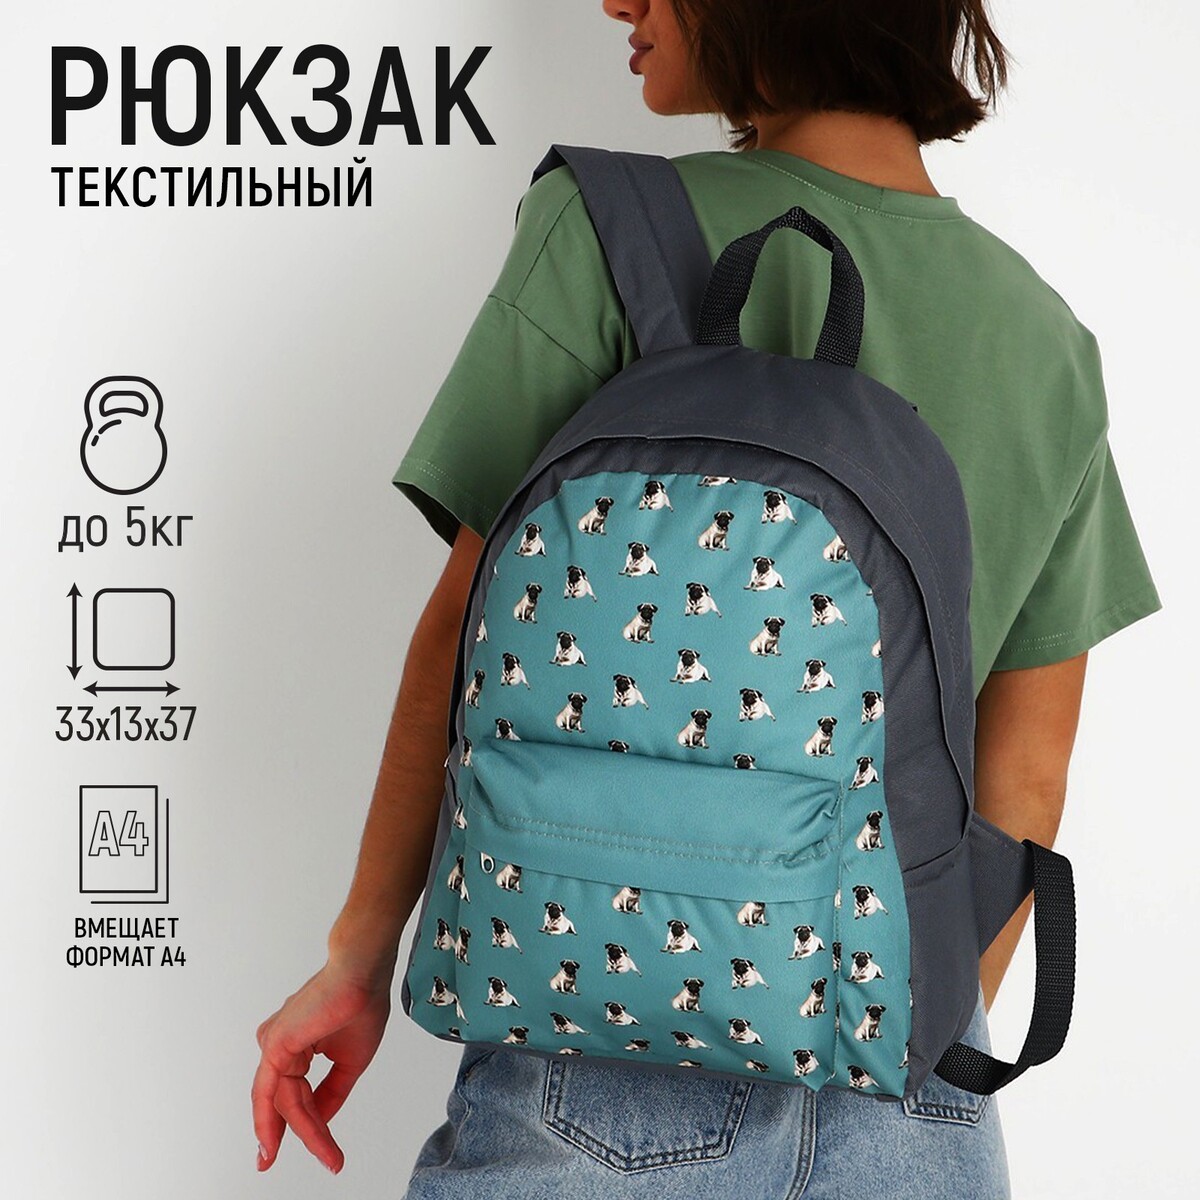 Рюкзак текстильный мопсы, с карманом, цвет серый рюкзак текстильный bright emotions 38 х 12 х 30 см